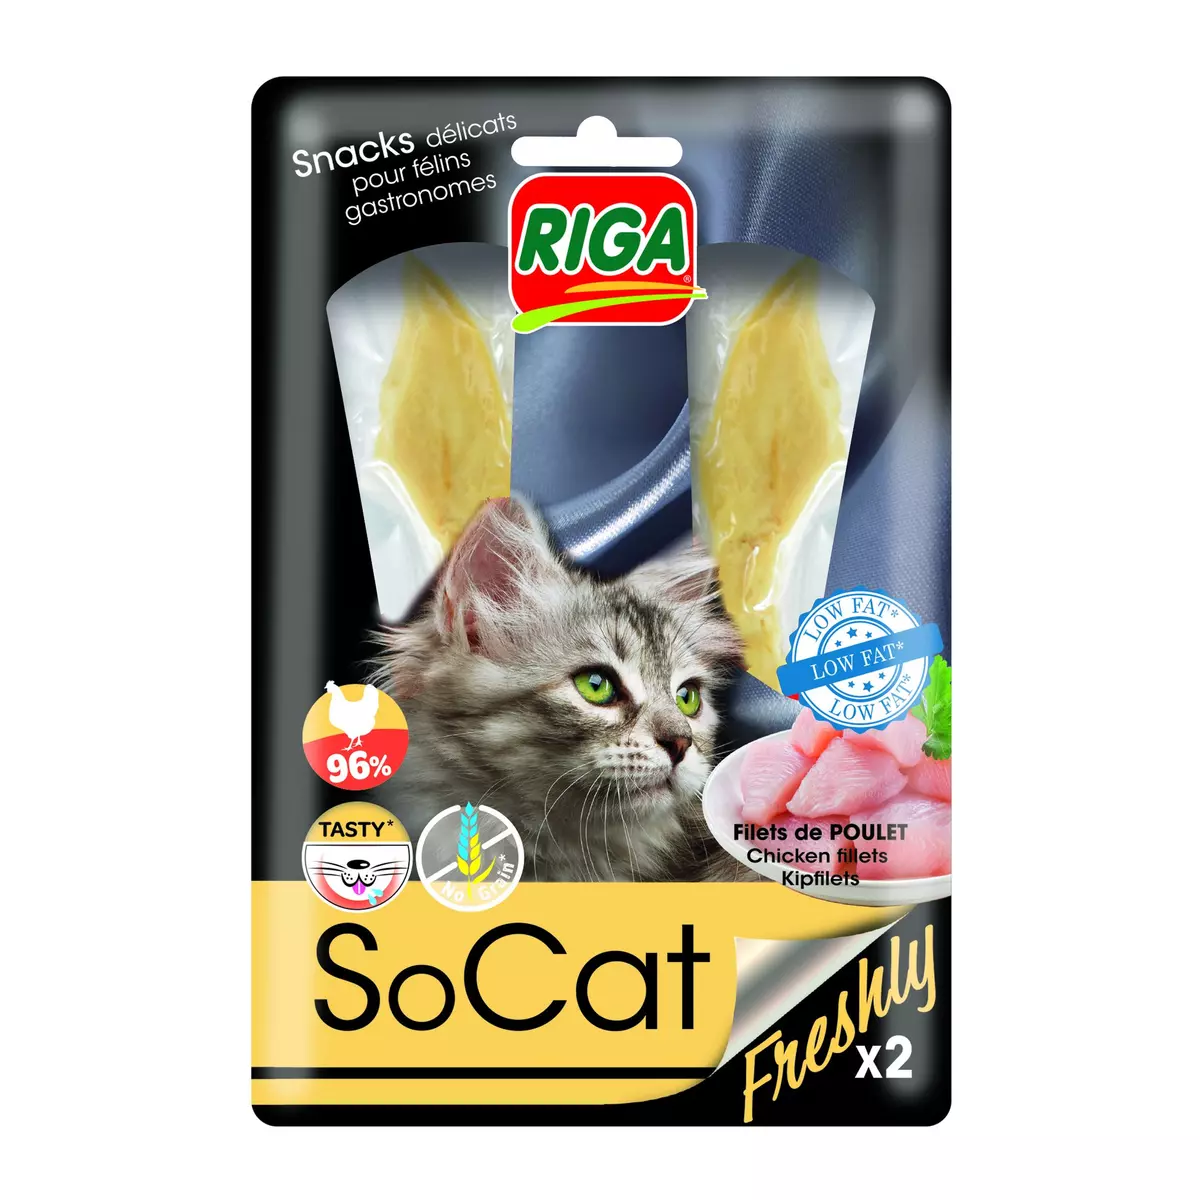 RIGA SoCat snacks de filets de poulet pour chat 2 pièces 25g